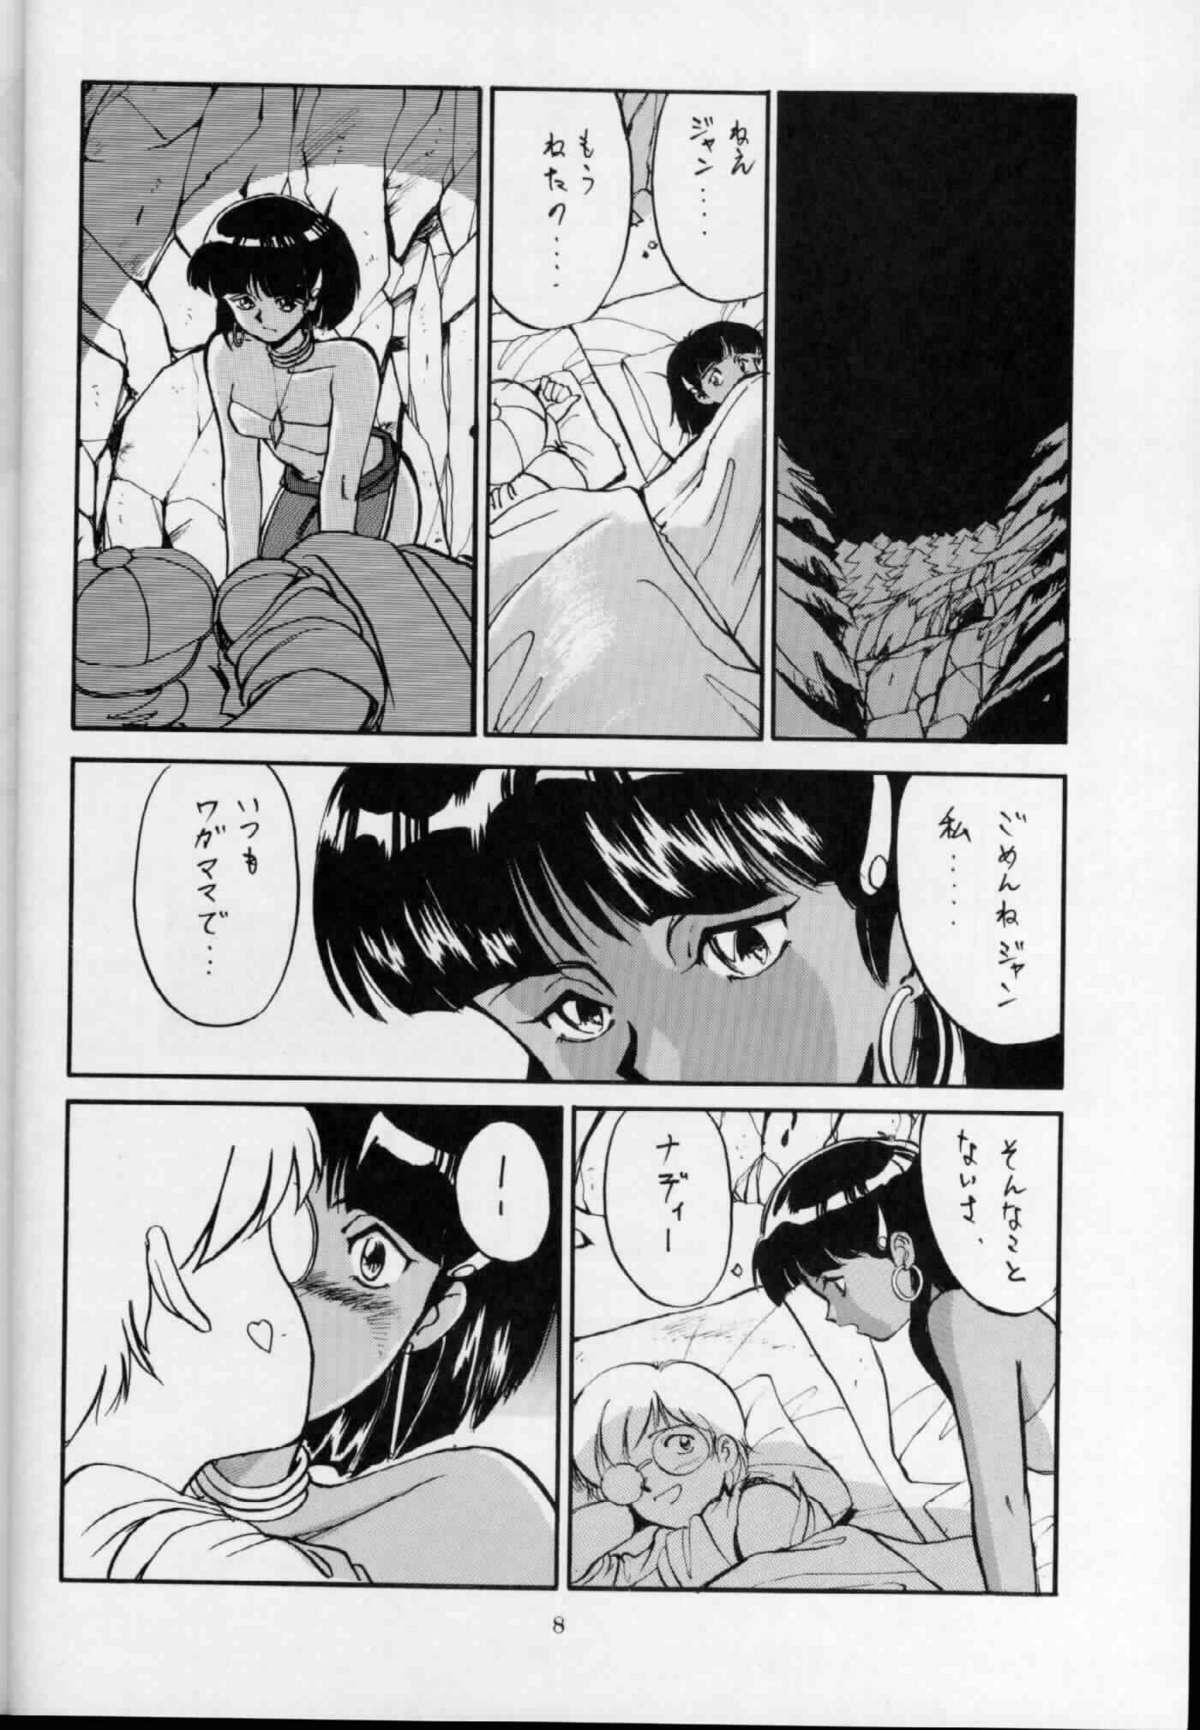 Bribe 'T' no Wagamama 'F' no Yuutsu 2 - Fushigi no umi no nadia Gordinha - Page 7